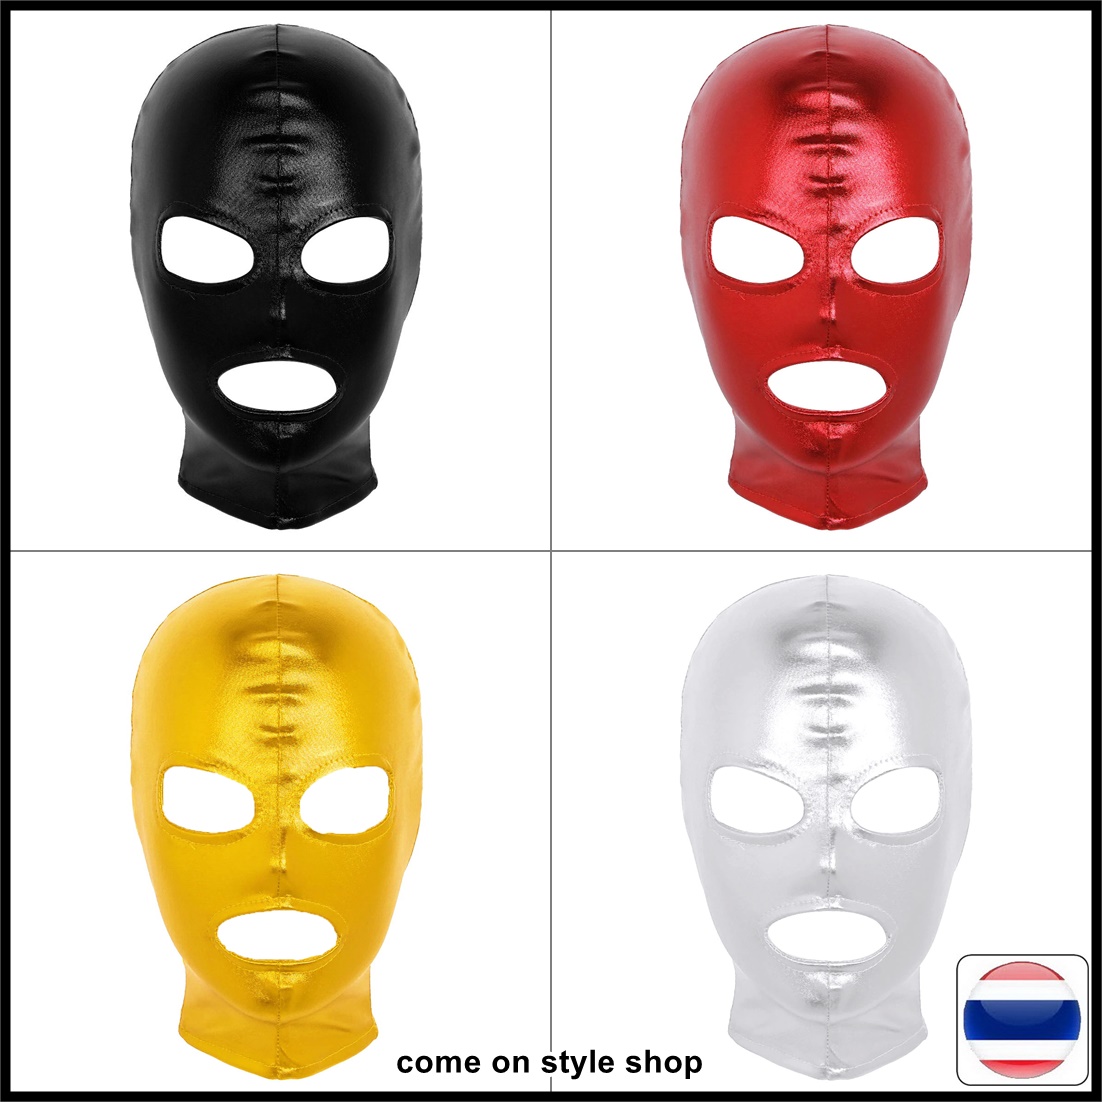 หมวกโม่งแฟนซี หน้ากากคลุมหัว ผ้าโพลีเอสเตอร์ สีเมทัลลิค เซ็กซ์ซี่ สินค้าผู้ใหญ่ Full Cover Hood Latex Shiny Metallic Mask